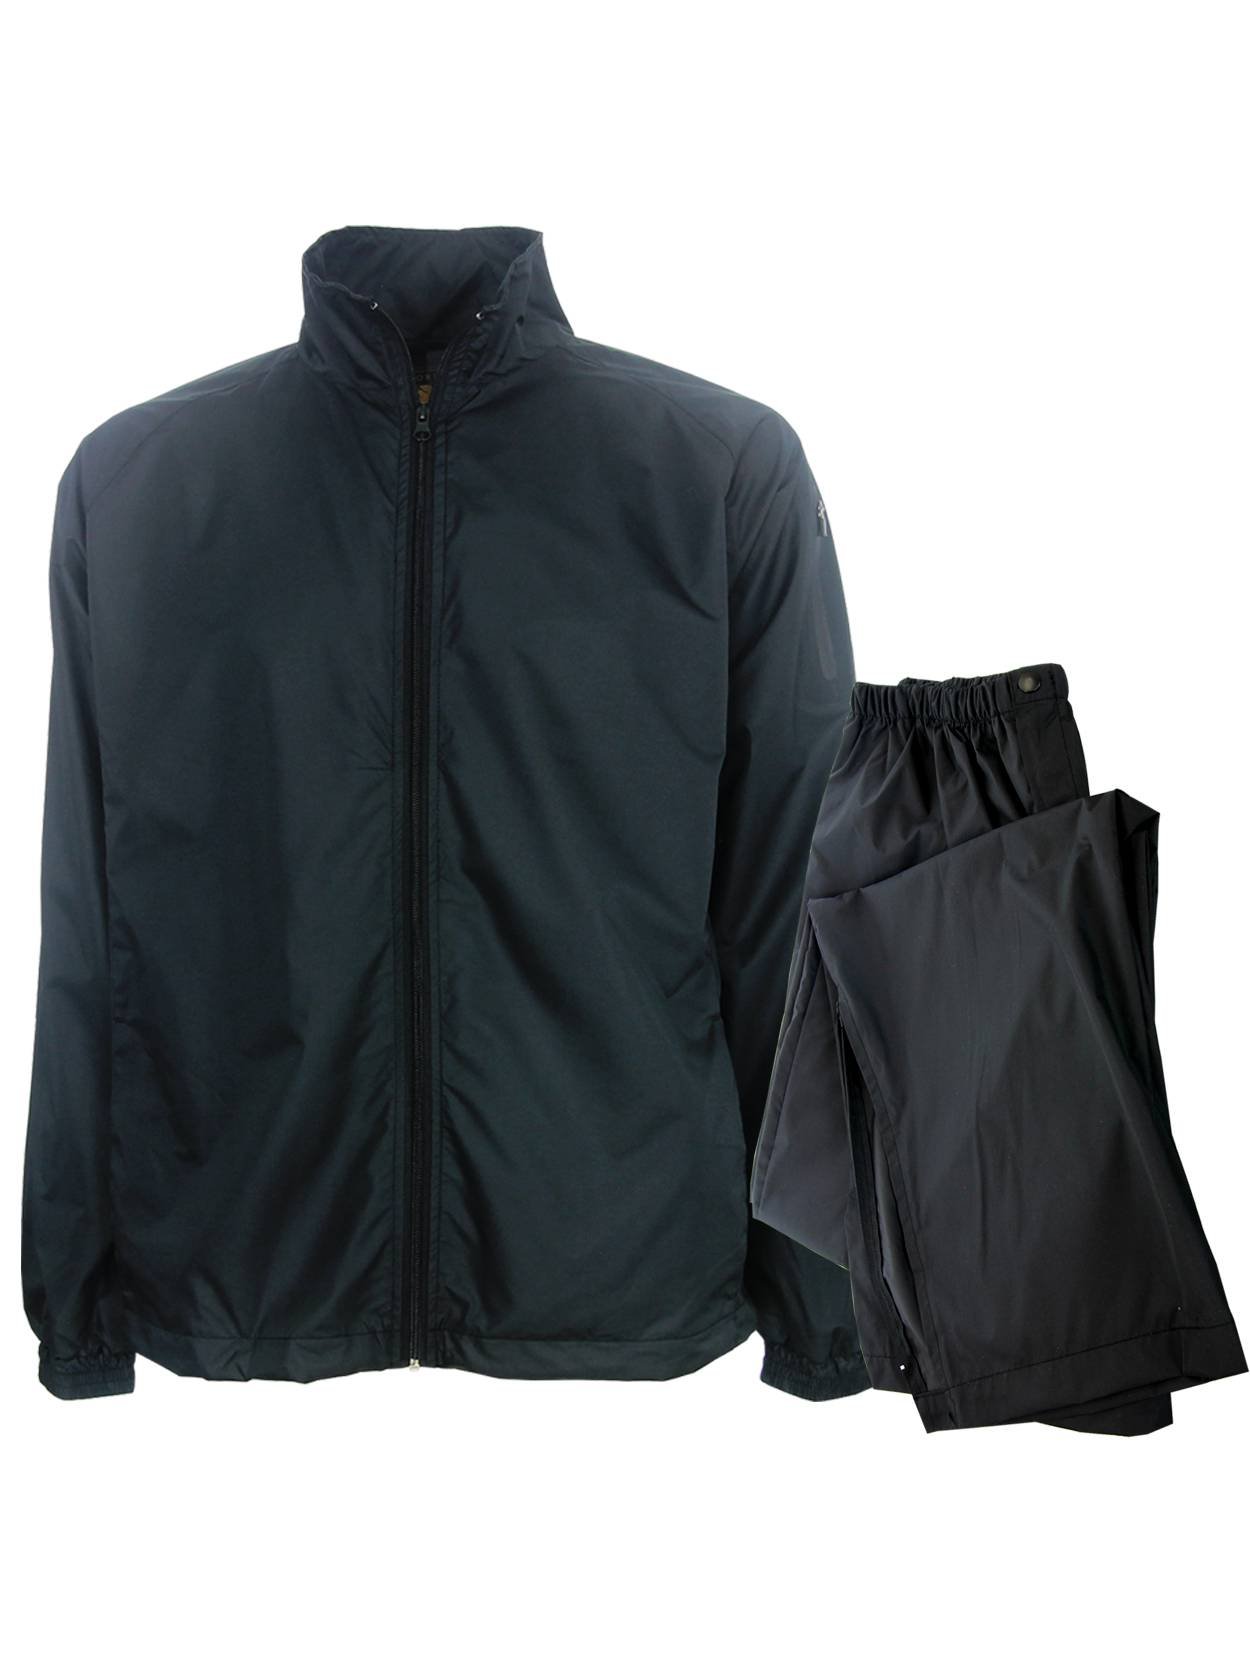 Mount Vesuv tempereret defile Forrester Men's Waterproof Golf Rain Suit - Packable - Select Size & Color!  | eBay